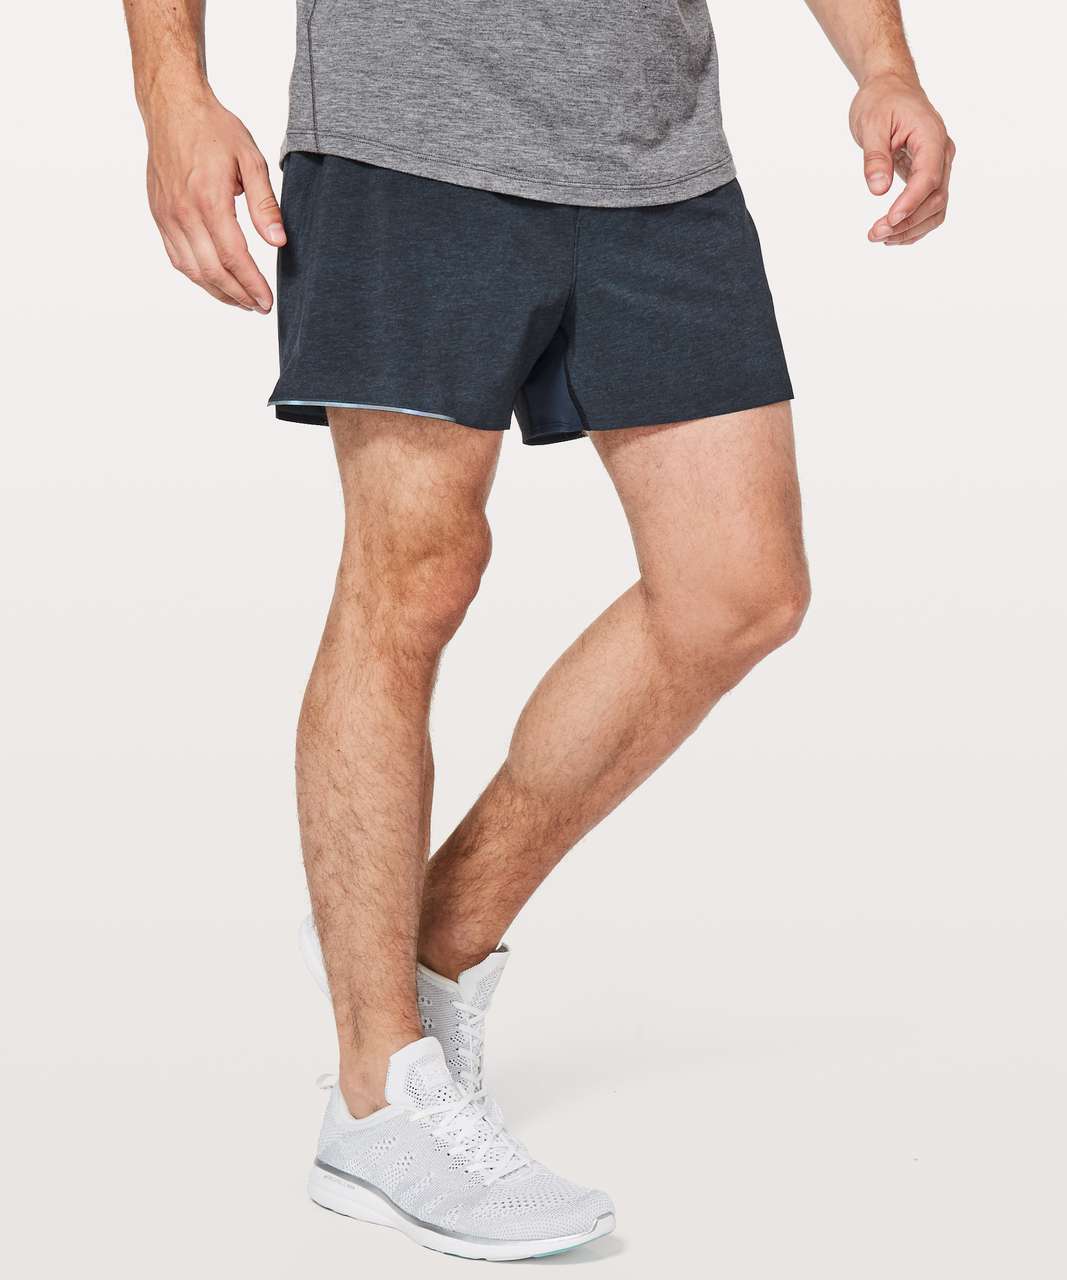 lululemon men's 4 inch shorts